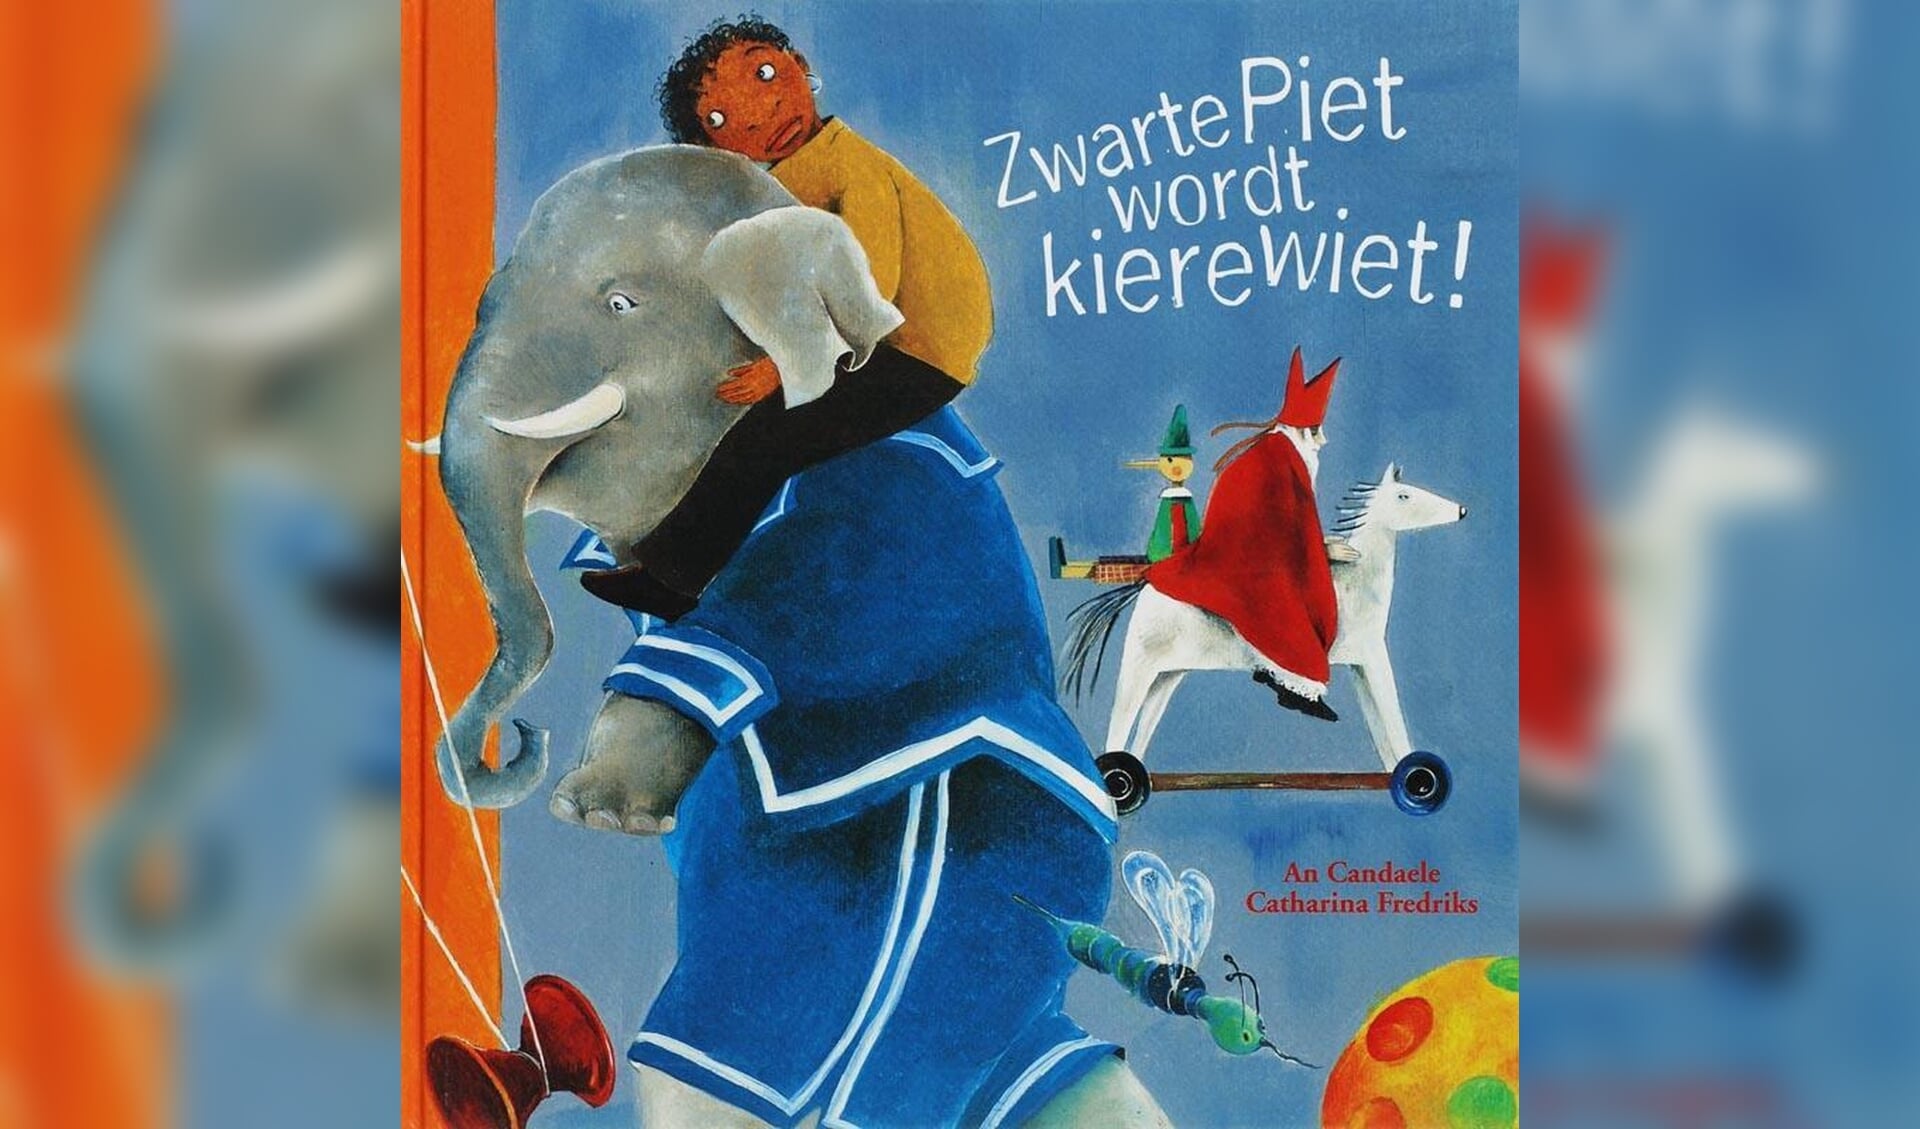 Eén van de kinderboeken over Zwarte Piet die in de Barneveldse bieb te vinden zijn.